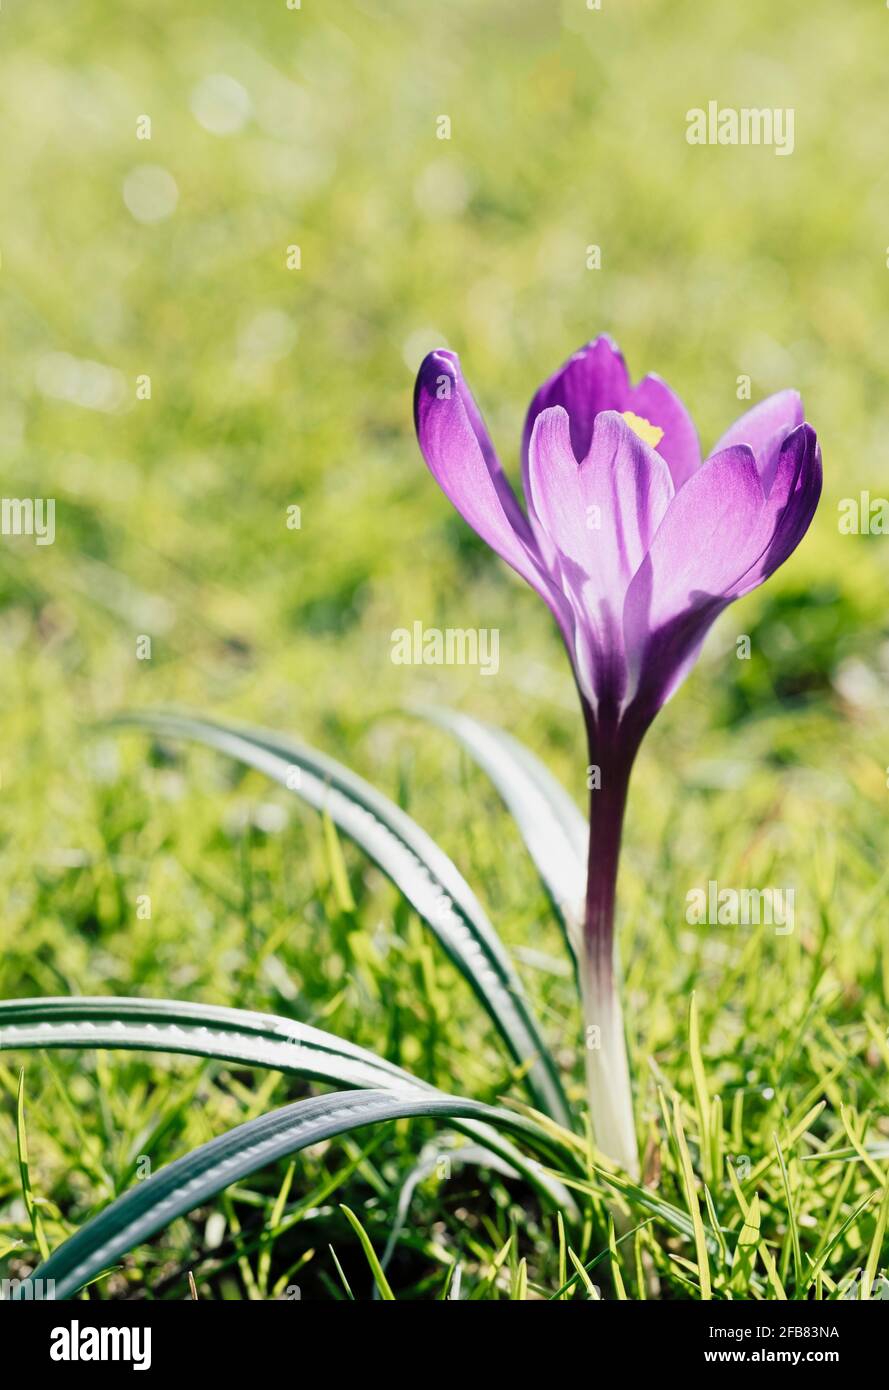 Crocus, Iridacae, vue latérale du flouer violet avec des pétales légèrement translucides contre-jour par le soleil. Banque D'Images